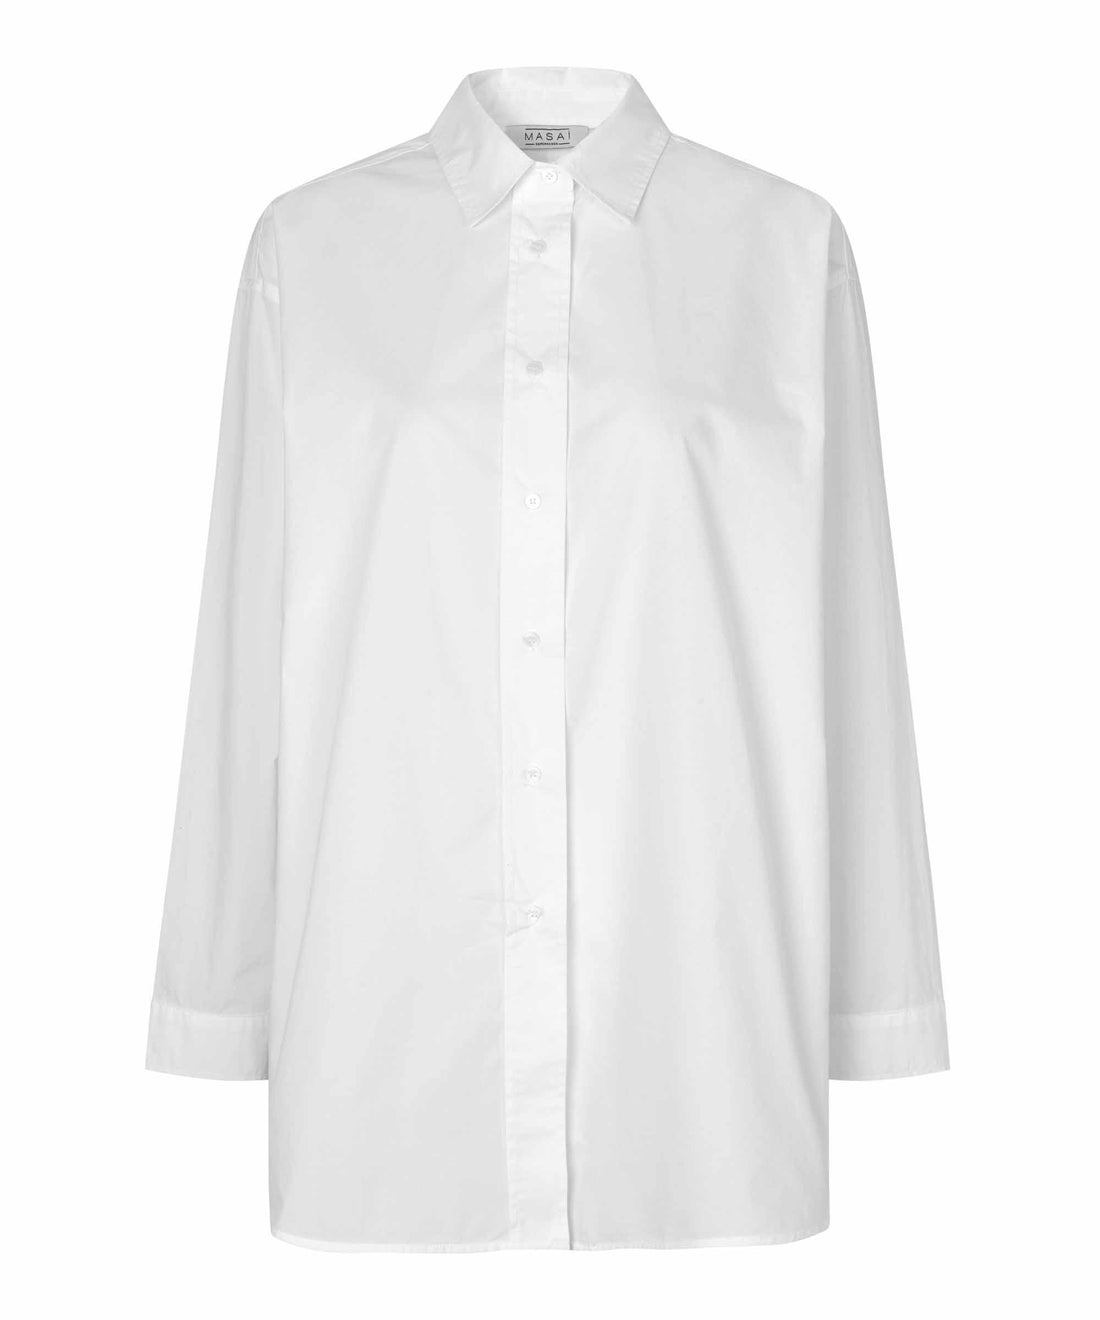 1007819 MaIdette Shirt - White